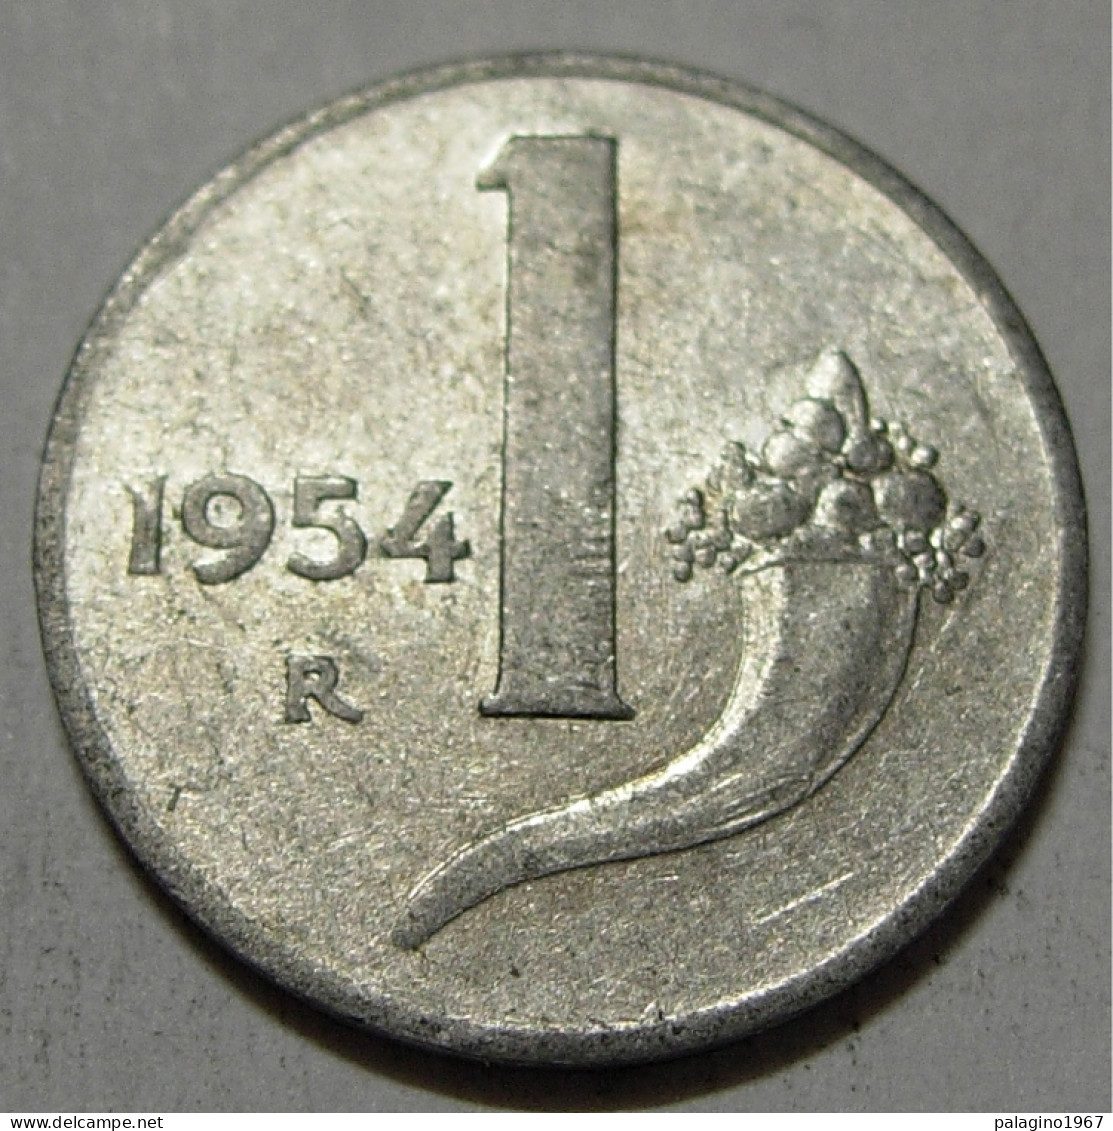 REPUBBLICA ITALIANA 1 Lira Cornucopia 1954 QBB  - 1 Lire